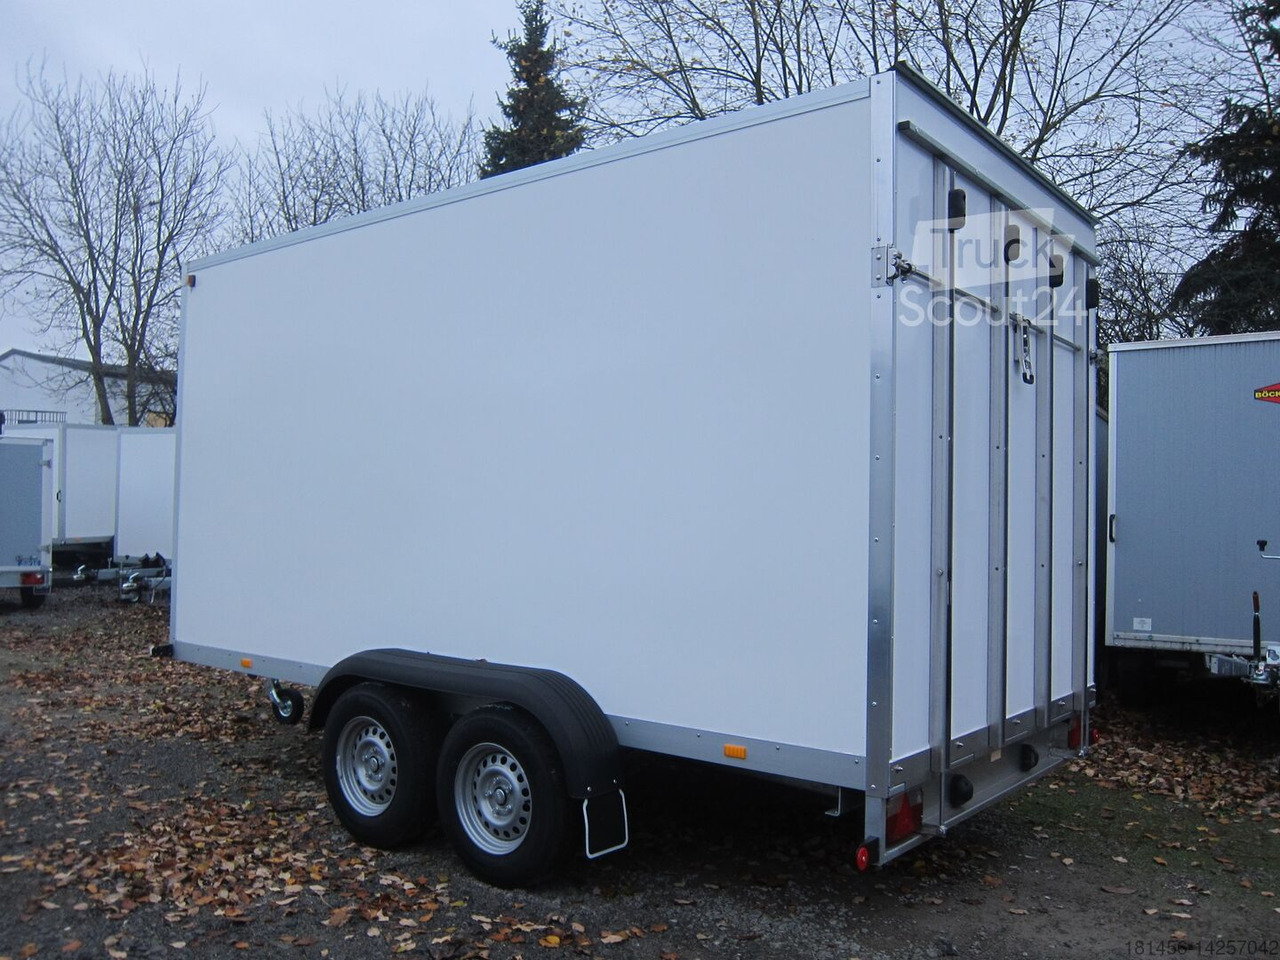 Wm Meyer direkt AZ 2740/185 Heckrampe abholen nach Bestellung in unserem trailershop - Car trailer: picture 4